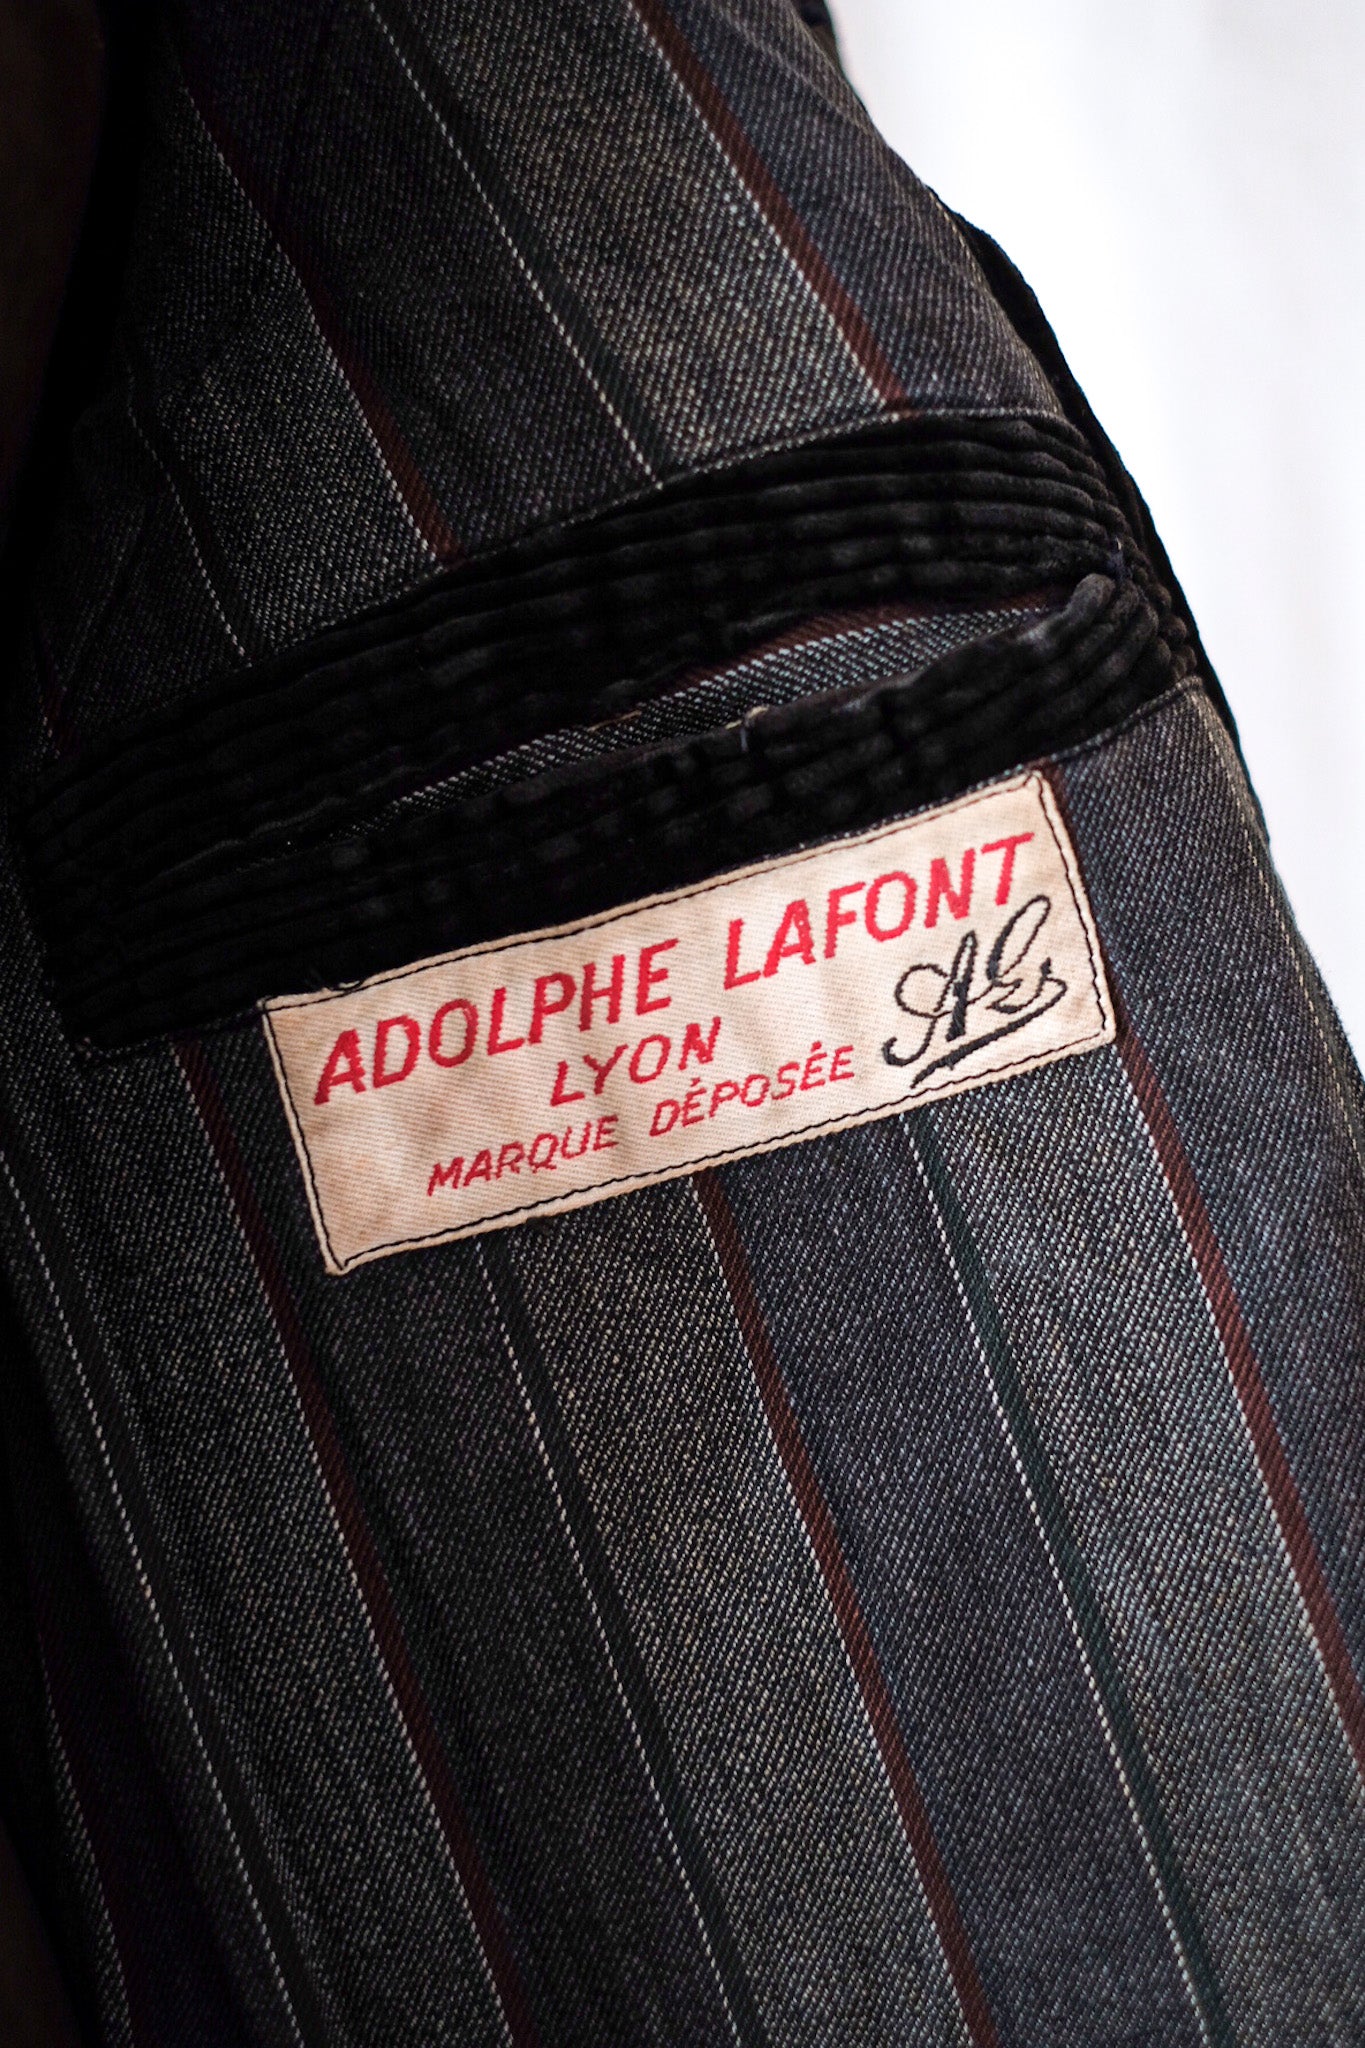 [~ 30's] แจ็คเก็ตผ้าลูกฟูกสีน้ำตาลเข้มของฝรั่งเศส "Adolphe Lafont" "Dead Stock"